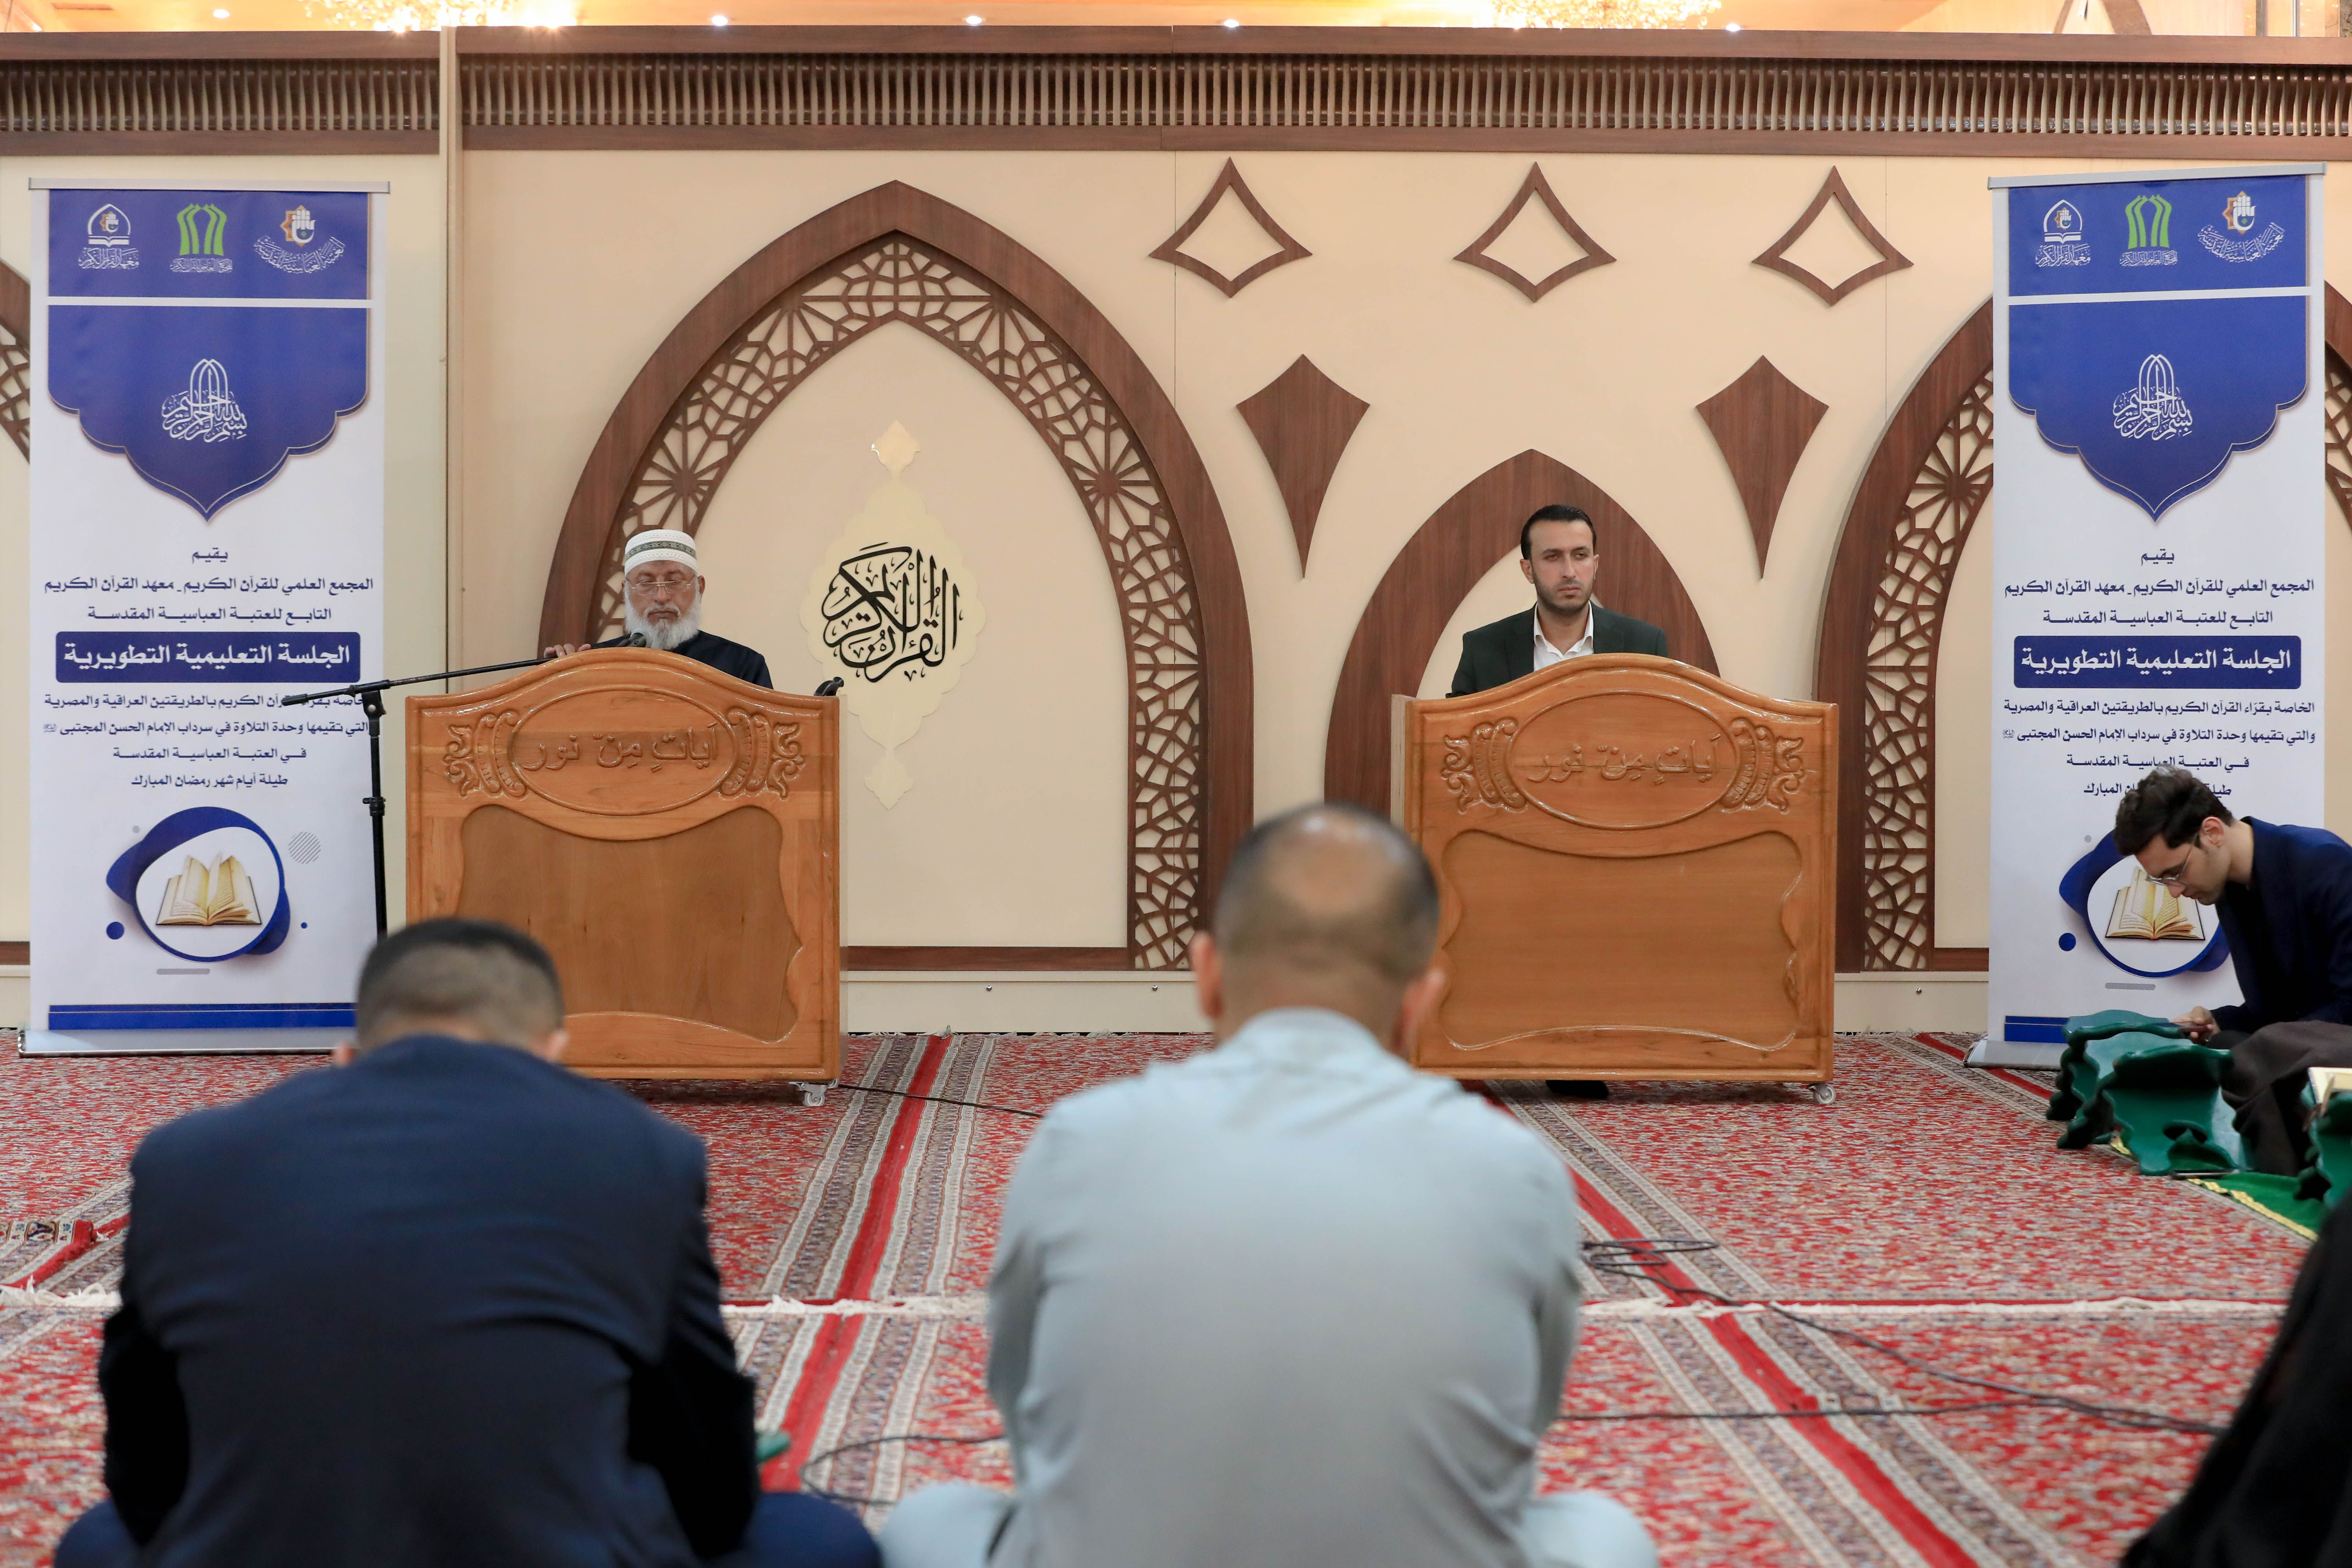 المَجمع العلمي يواصل إقامة الجلسات التعليمية الخاصة بشهر رمضان